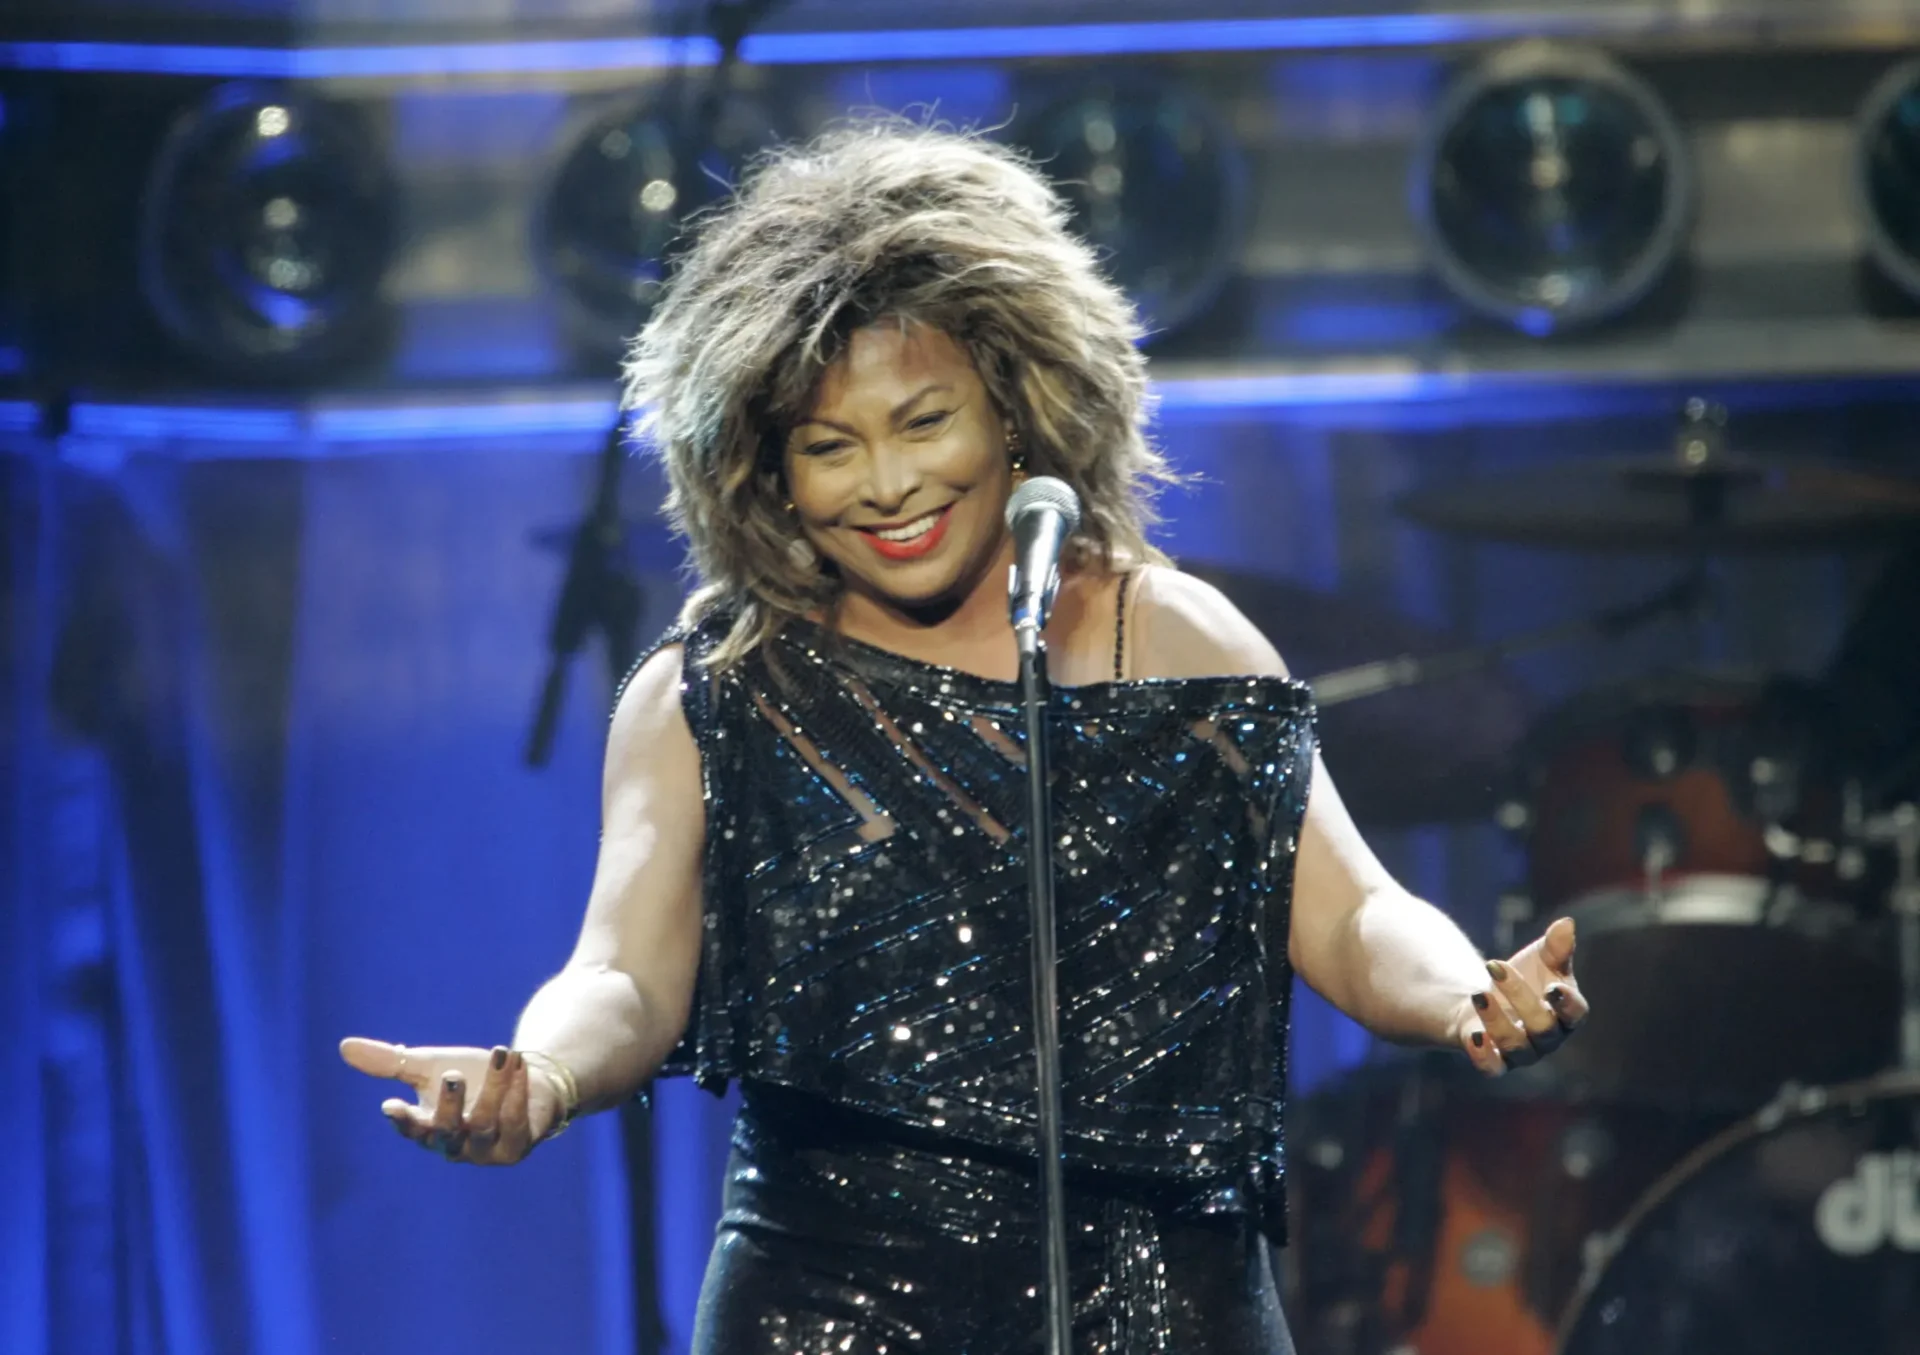 Ensayo: El aprecio de un megafanático por la energía ilimitada y las lecciones de supervivencia de Tina Turner